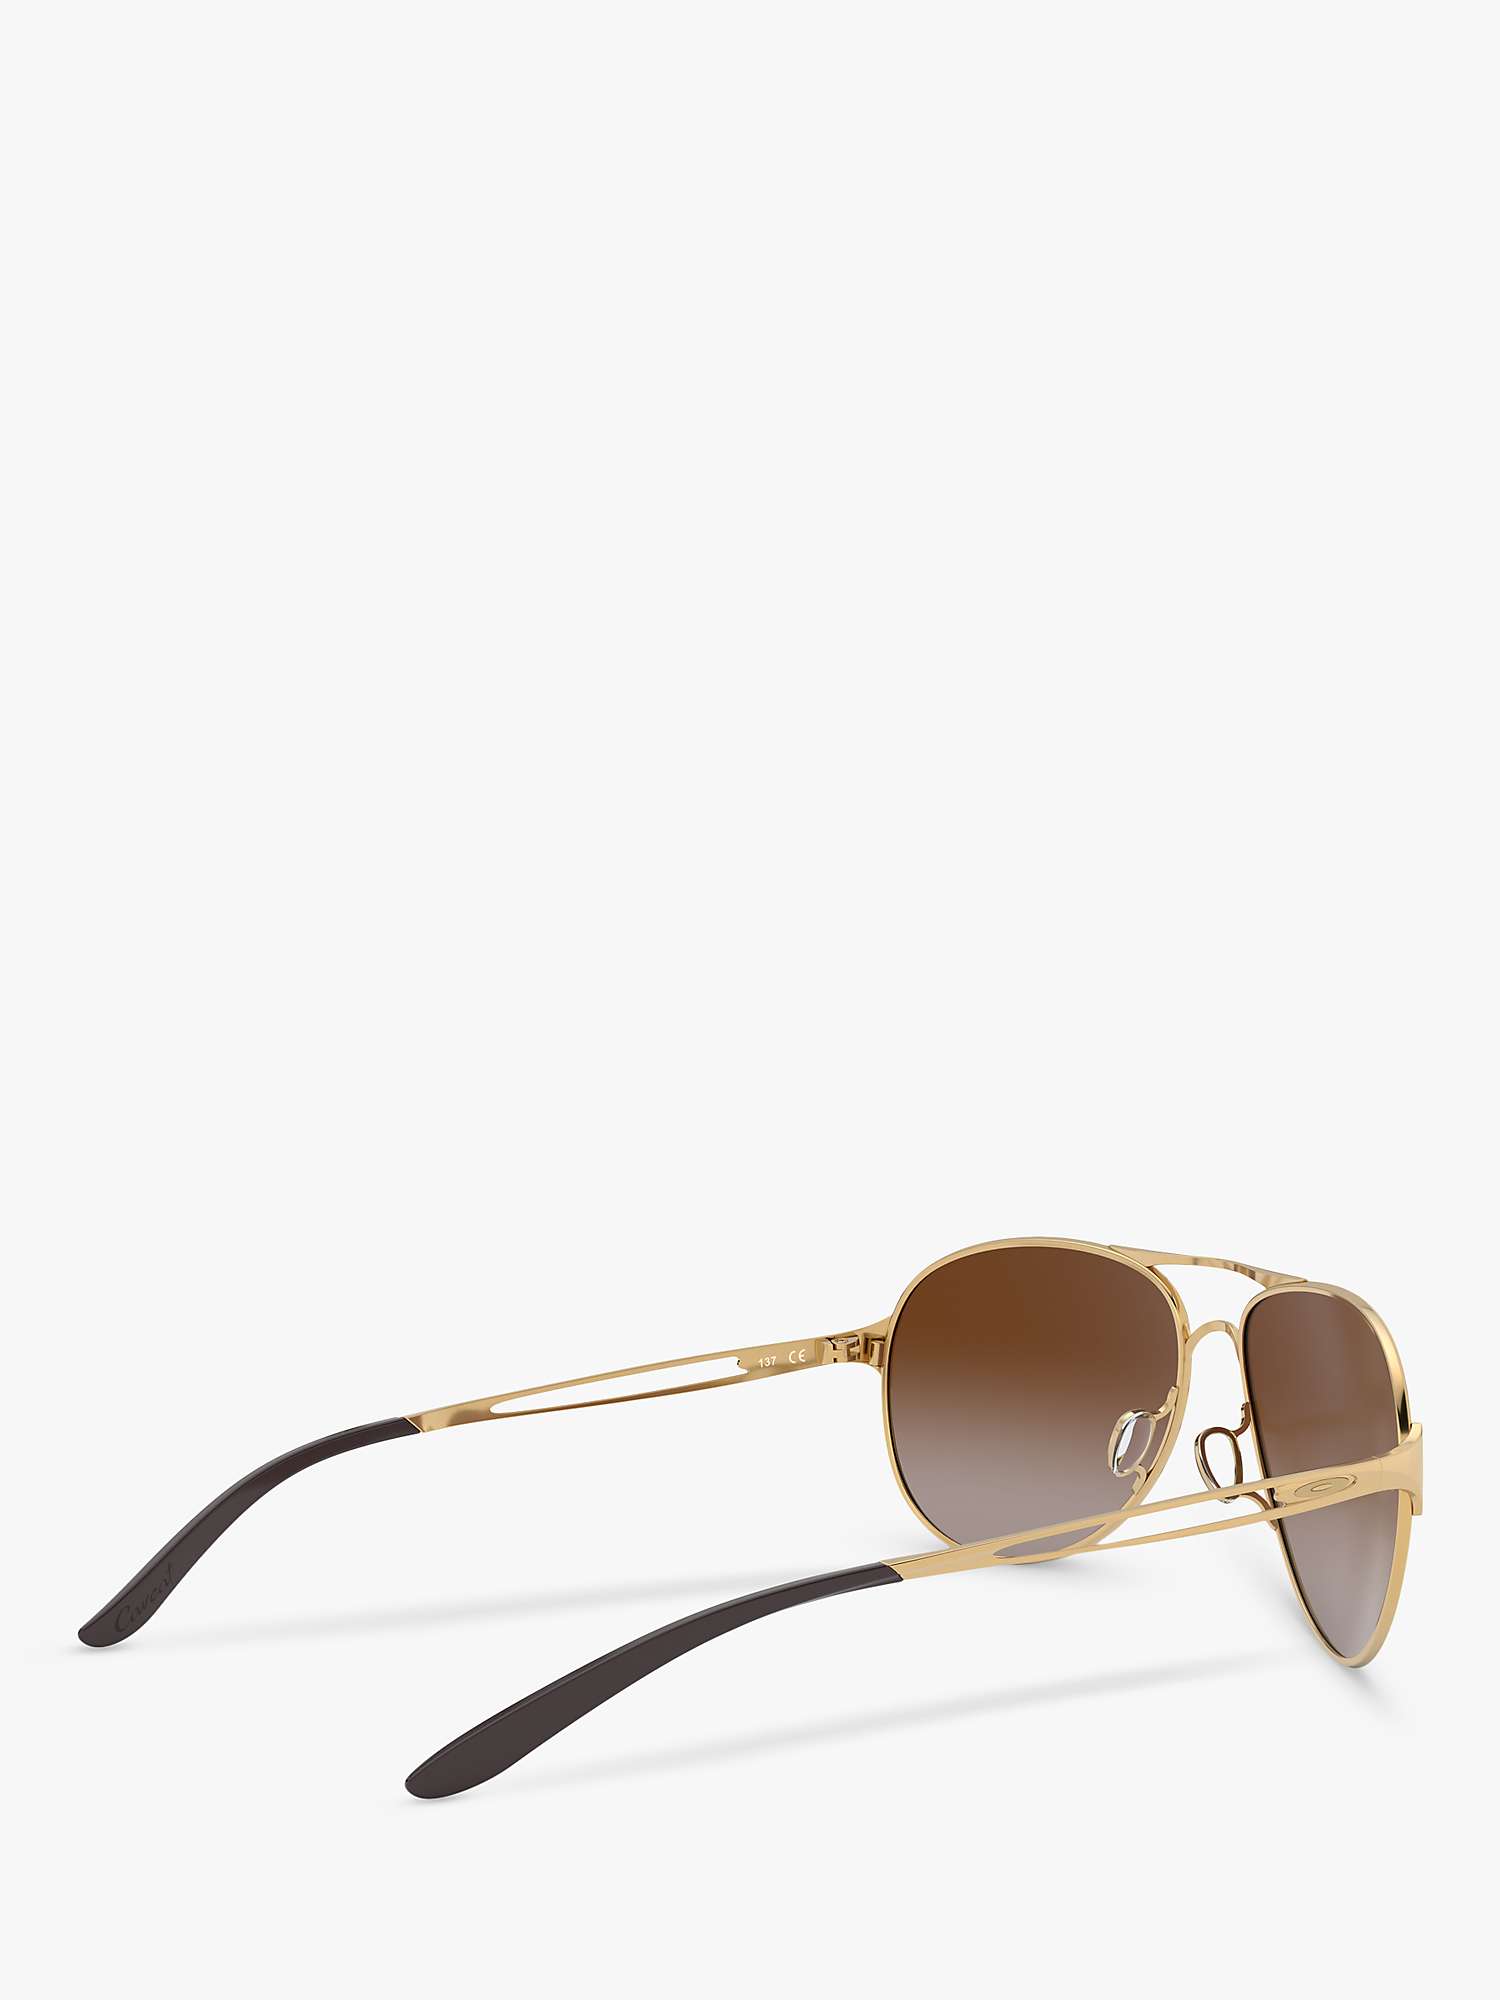 Buy Oakley OO4054 Women's Caveat Pilot Sunglasses, Gold/Brown Gradient Online at johnlewis.com